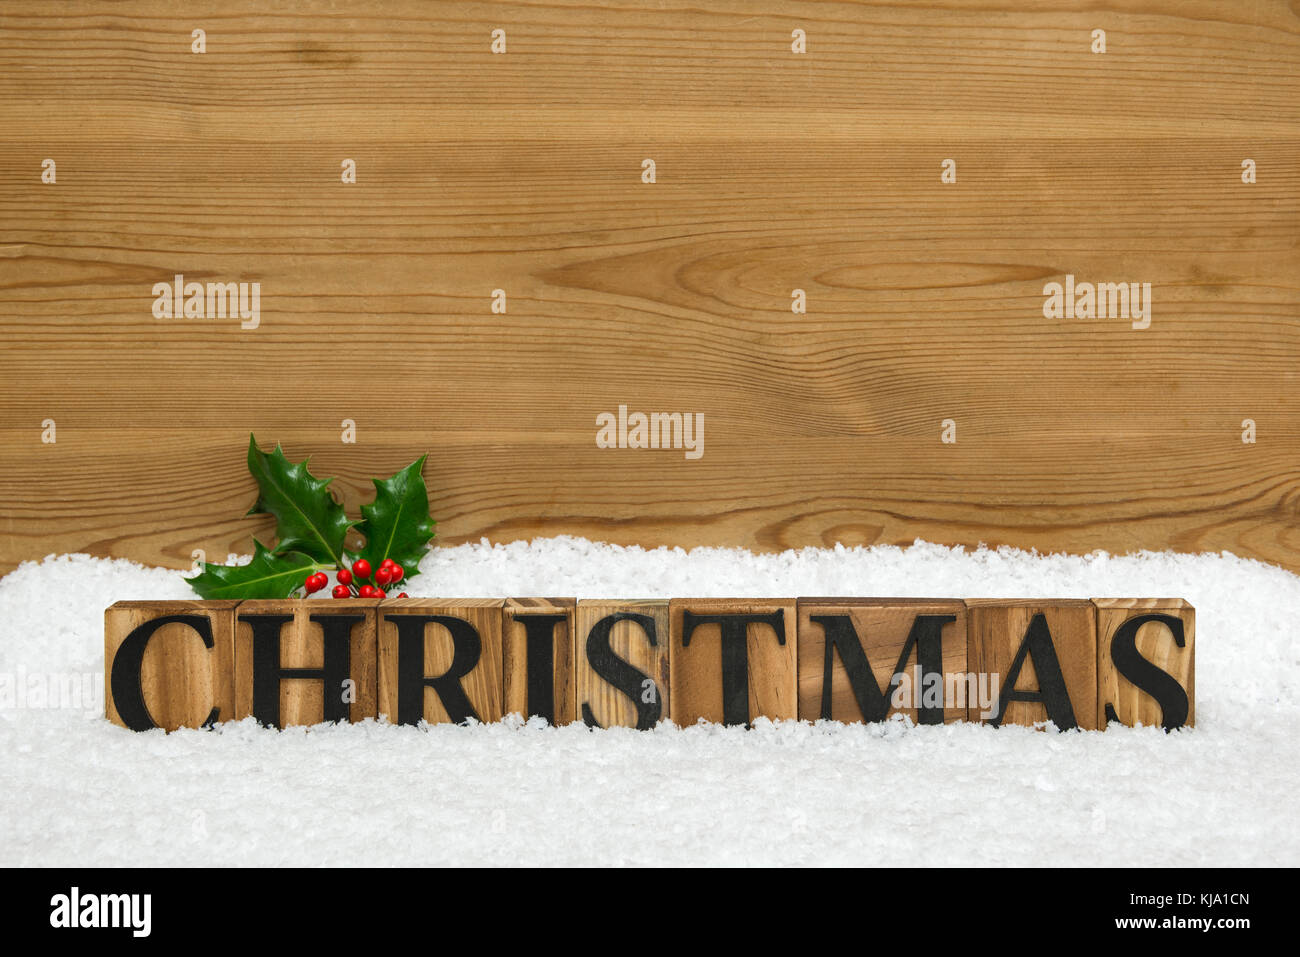 Das Wort Weihnachten aus Holz Baustein Buchstaben auf einigen Schnee mit einem Zweig von Holly und ein rustikales Holz- Hintergrund mit Kopie Raum ihre eigenen mich hinzufügen Stockfoto